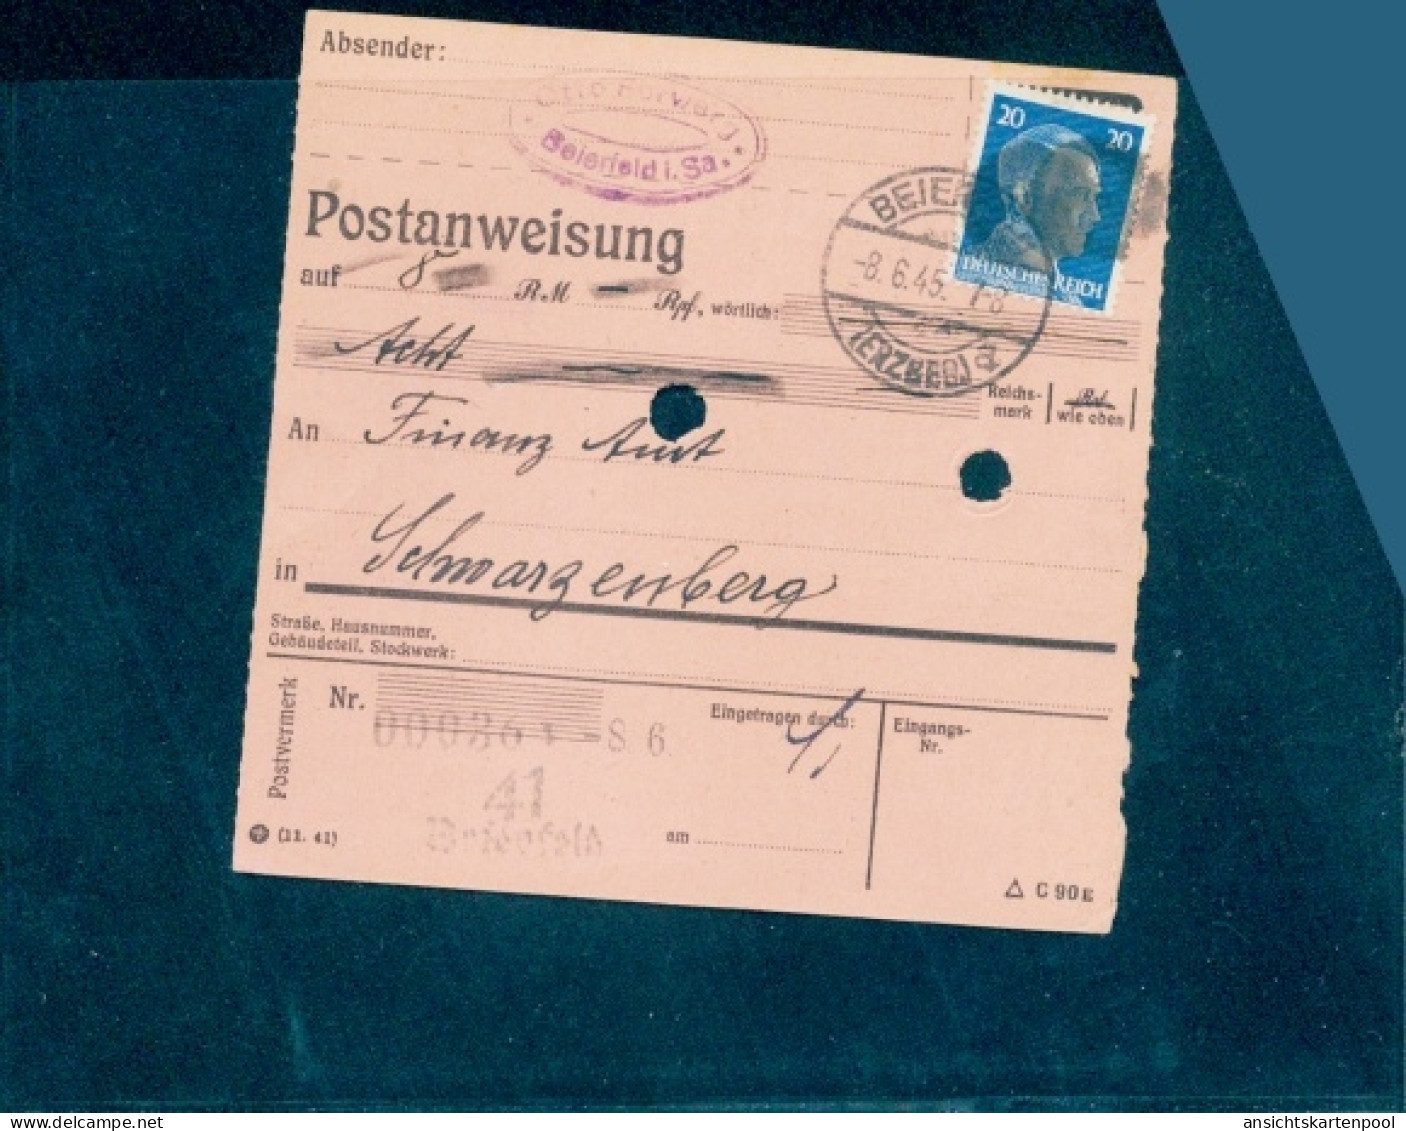 SBZ BL Sachsen, RPD Chemnitz, AP 791 I, Postanweisung - Afgestempeld